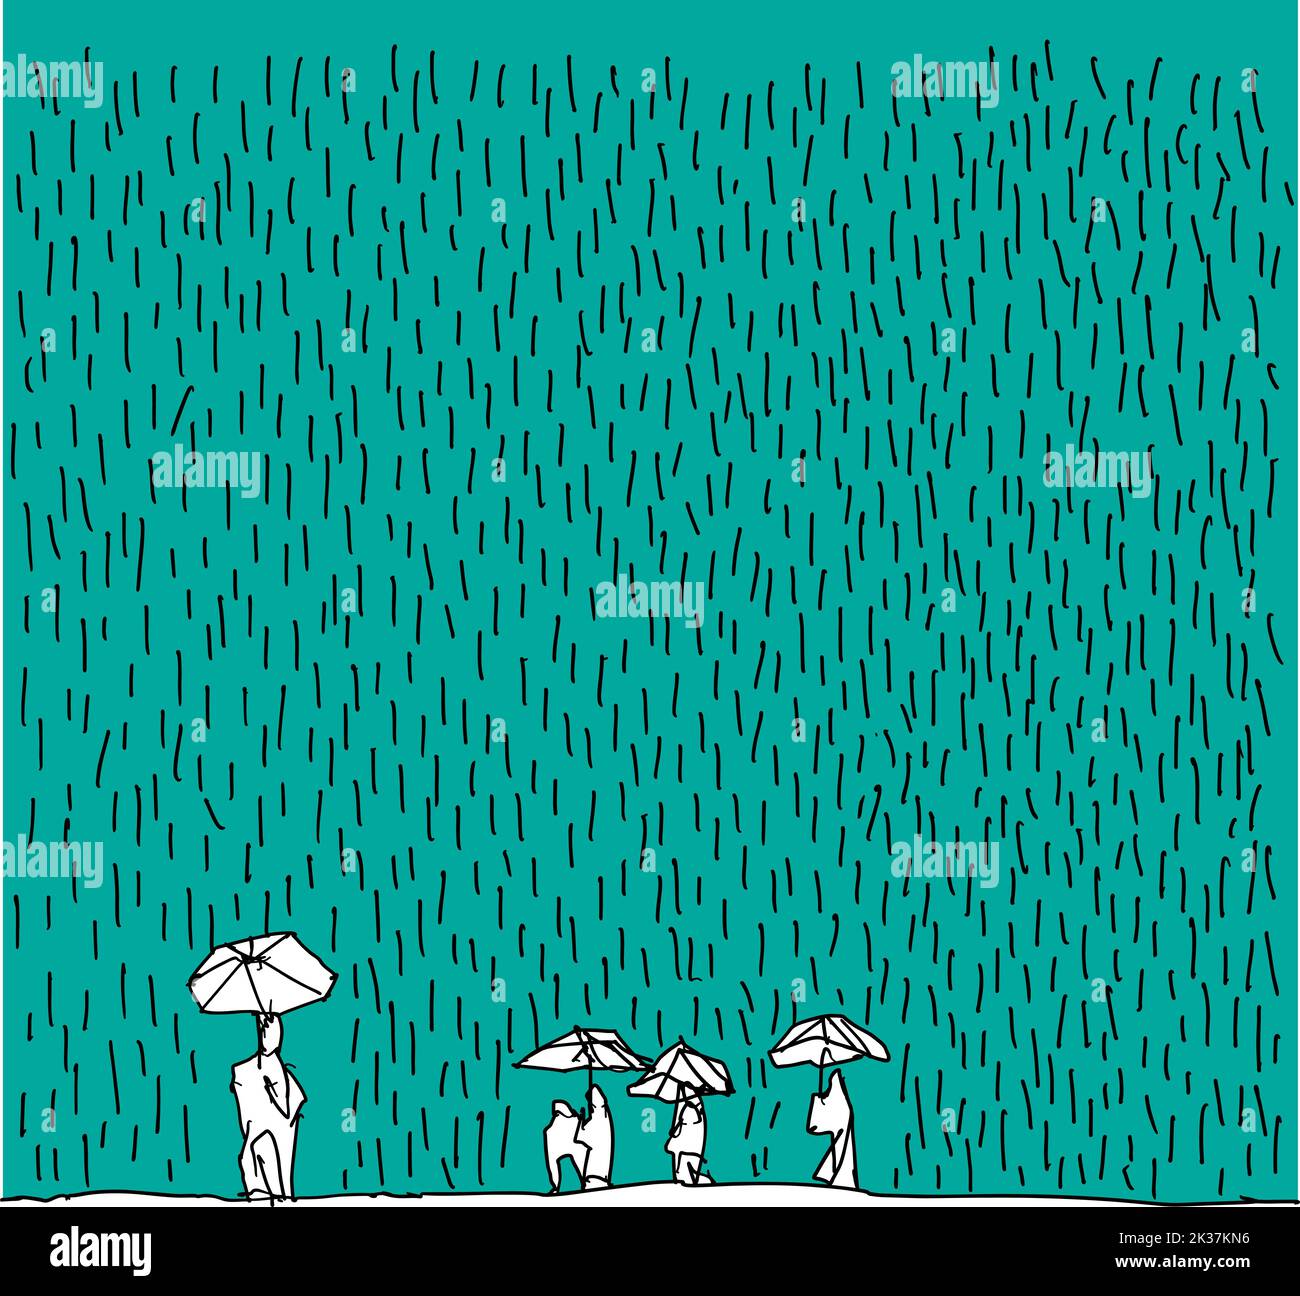 Handgezeichnete Skizze von Menschen mit Regenschirmen bei starkem Regen Stockfoto